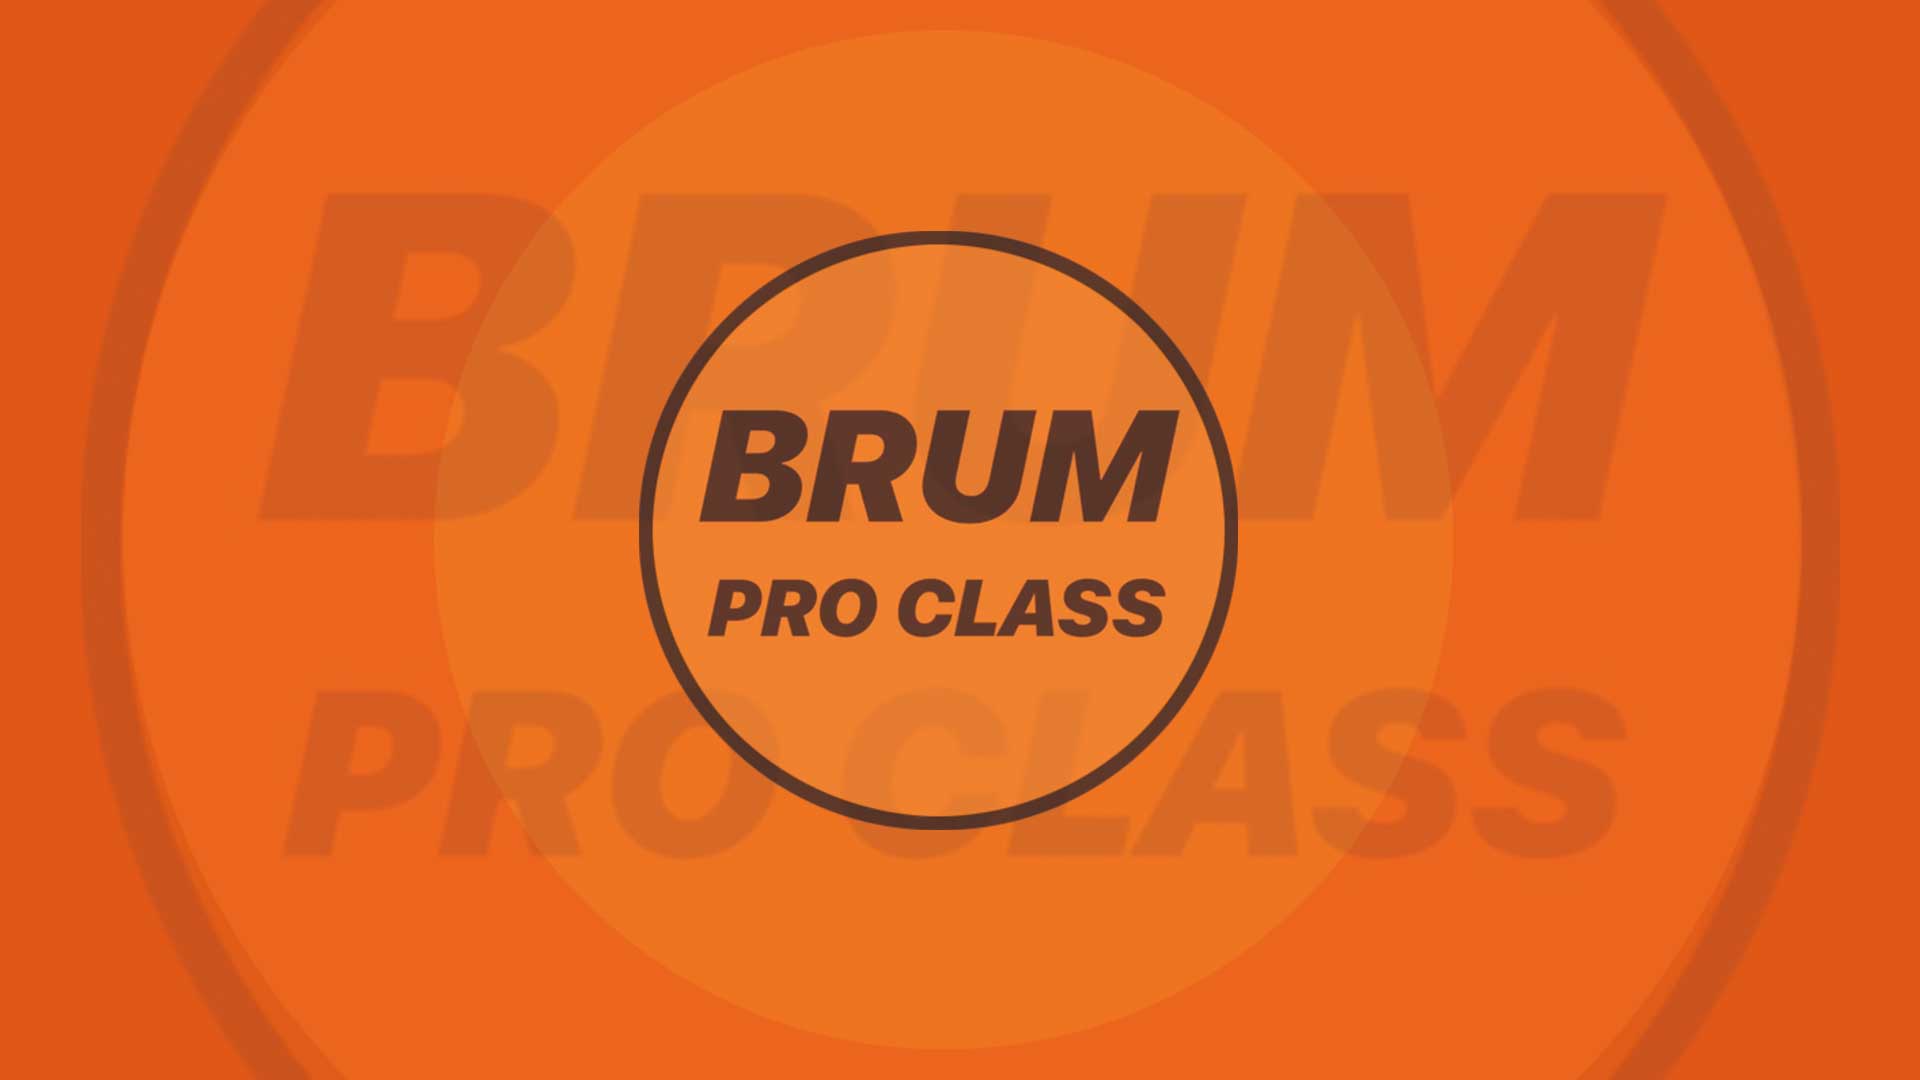 12 Dec 2022 – 10:00 @ FABRIC Studio 3 Brum Pro Class w/ Johnny Autin